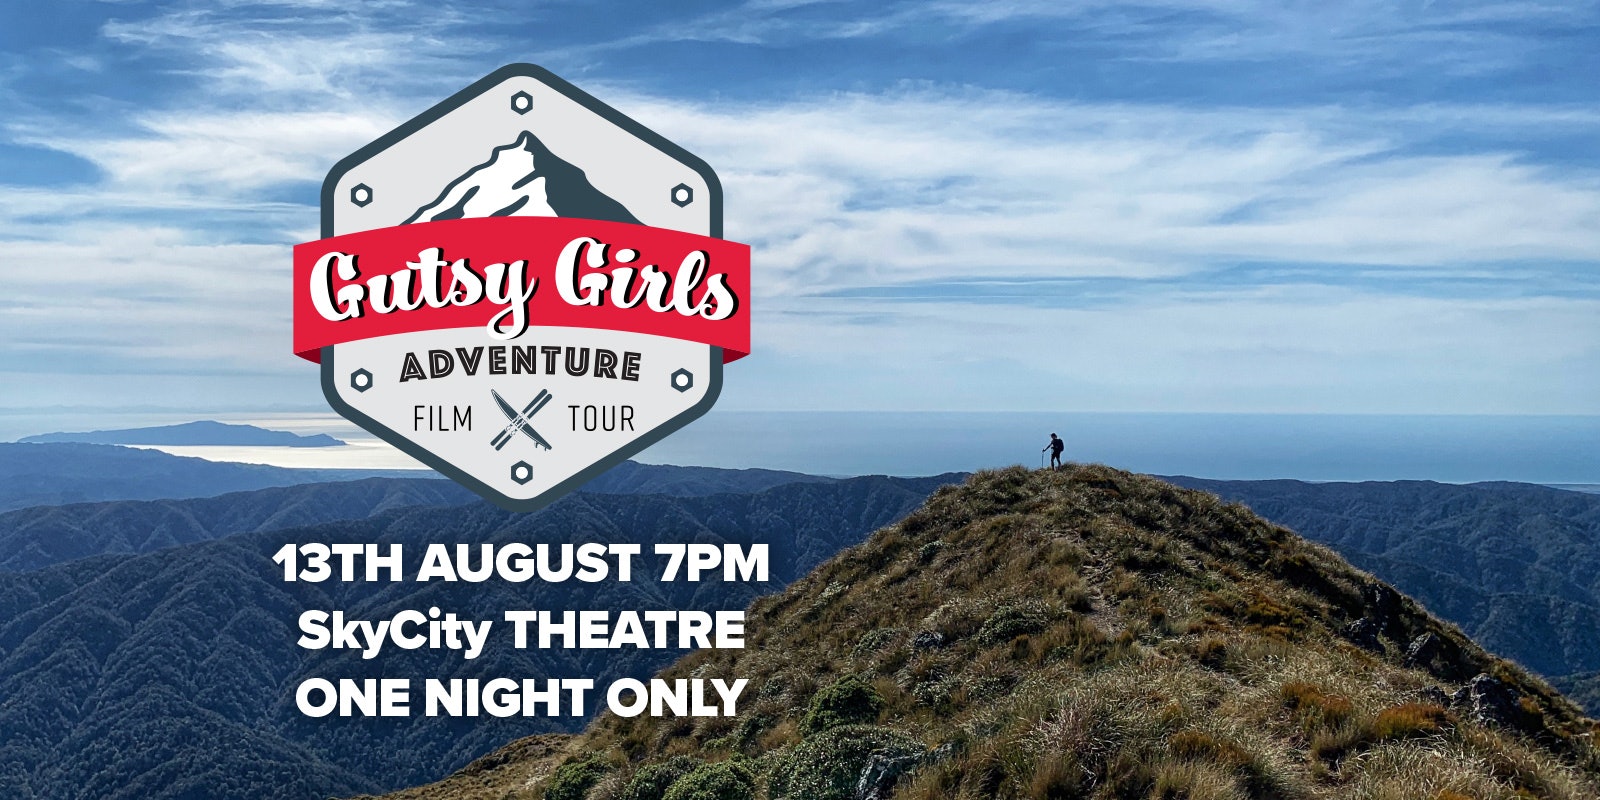 Gutsy Girls Adventure Film Tour